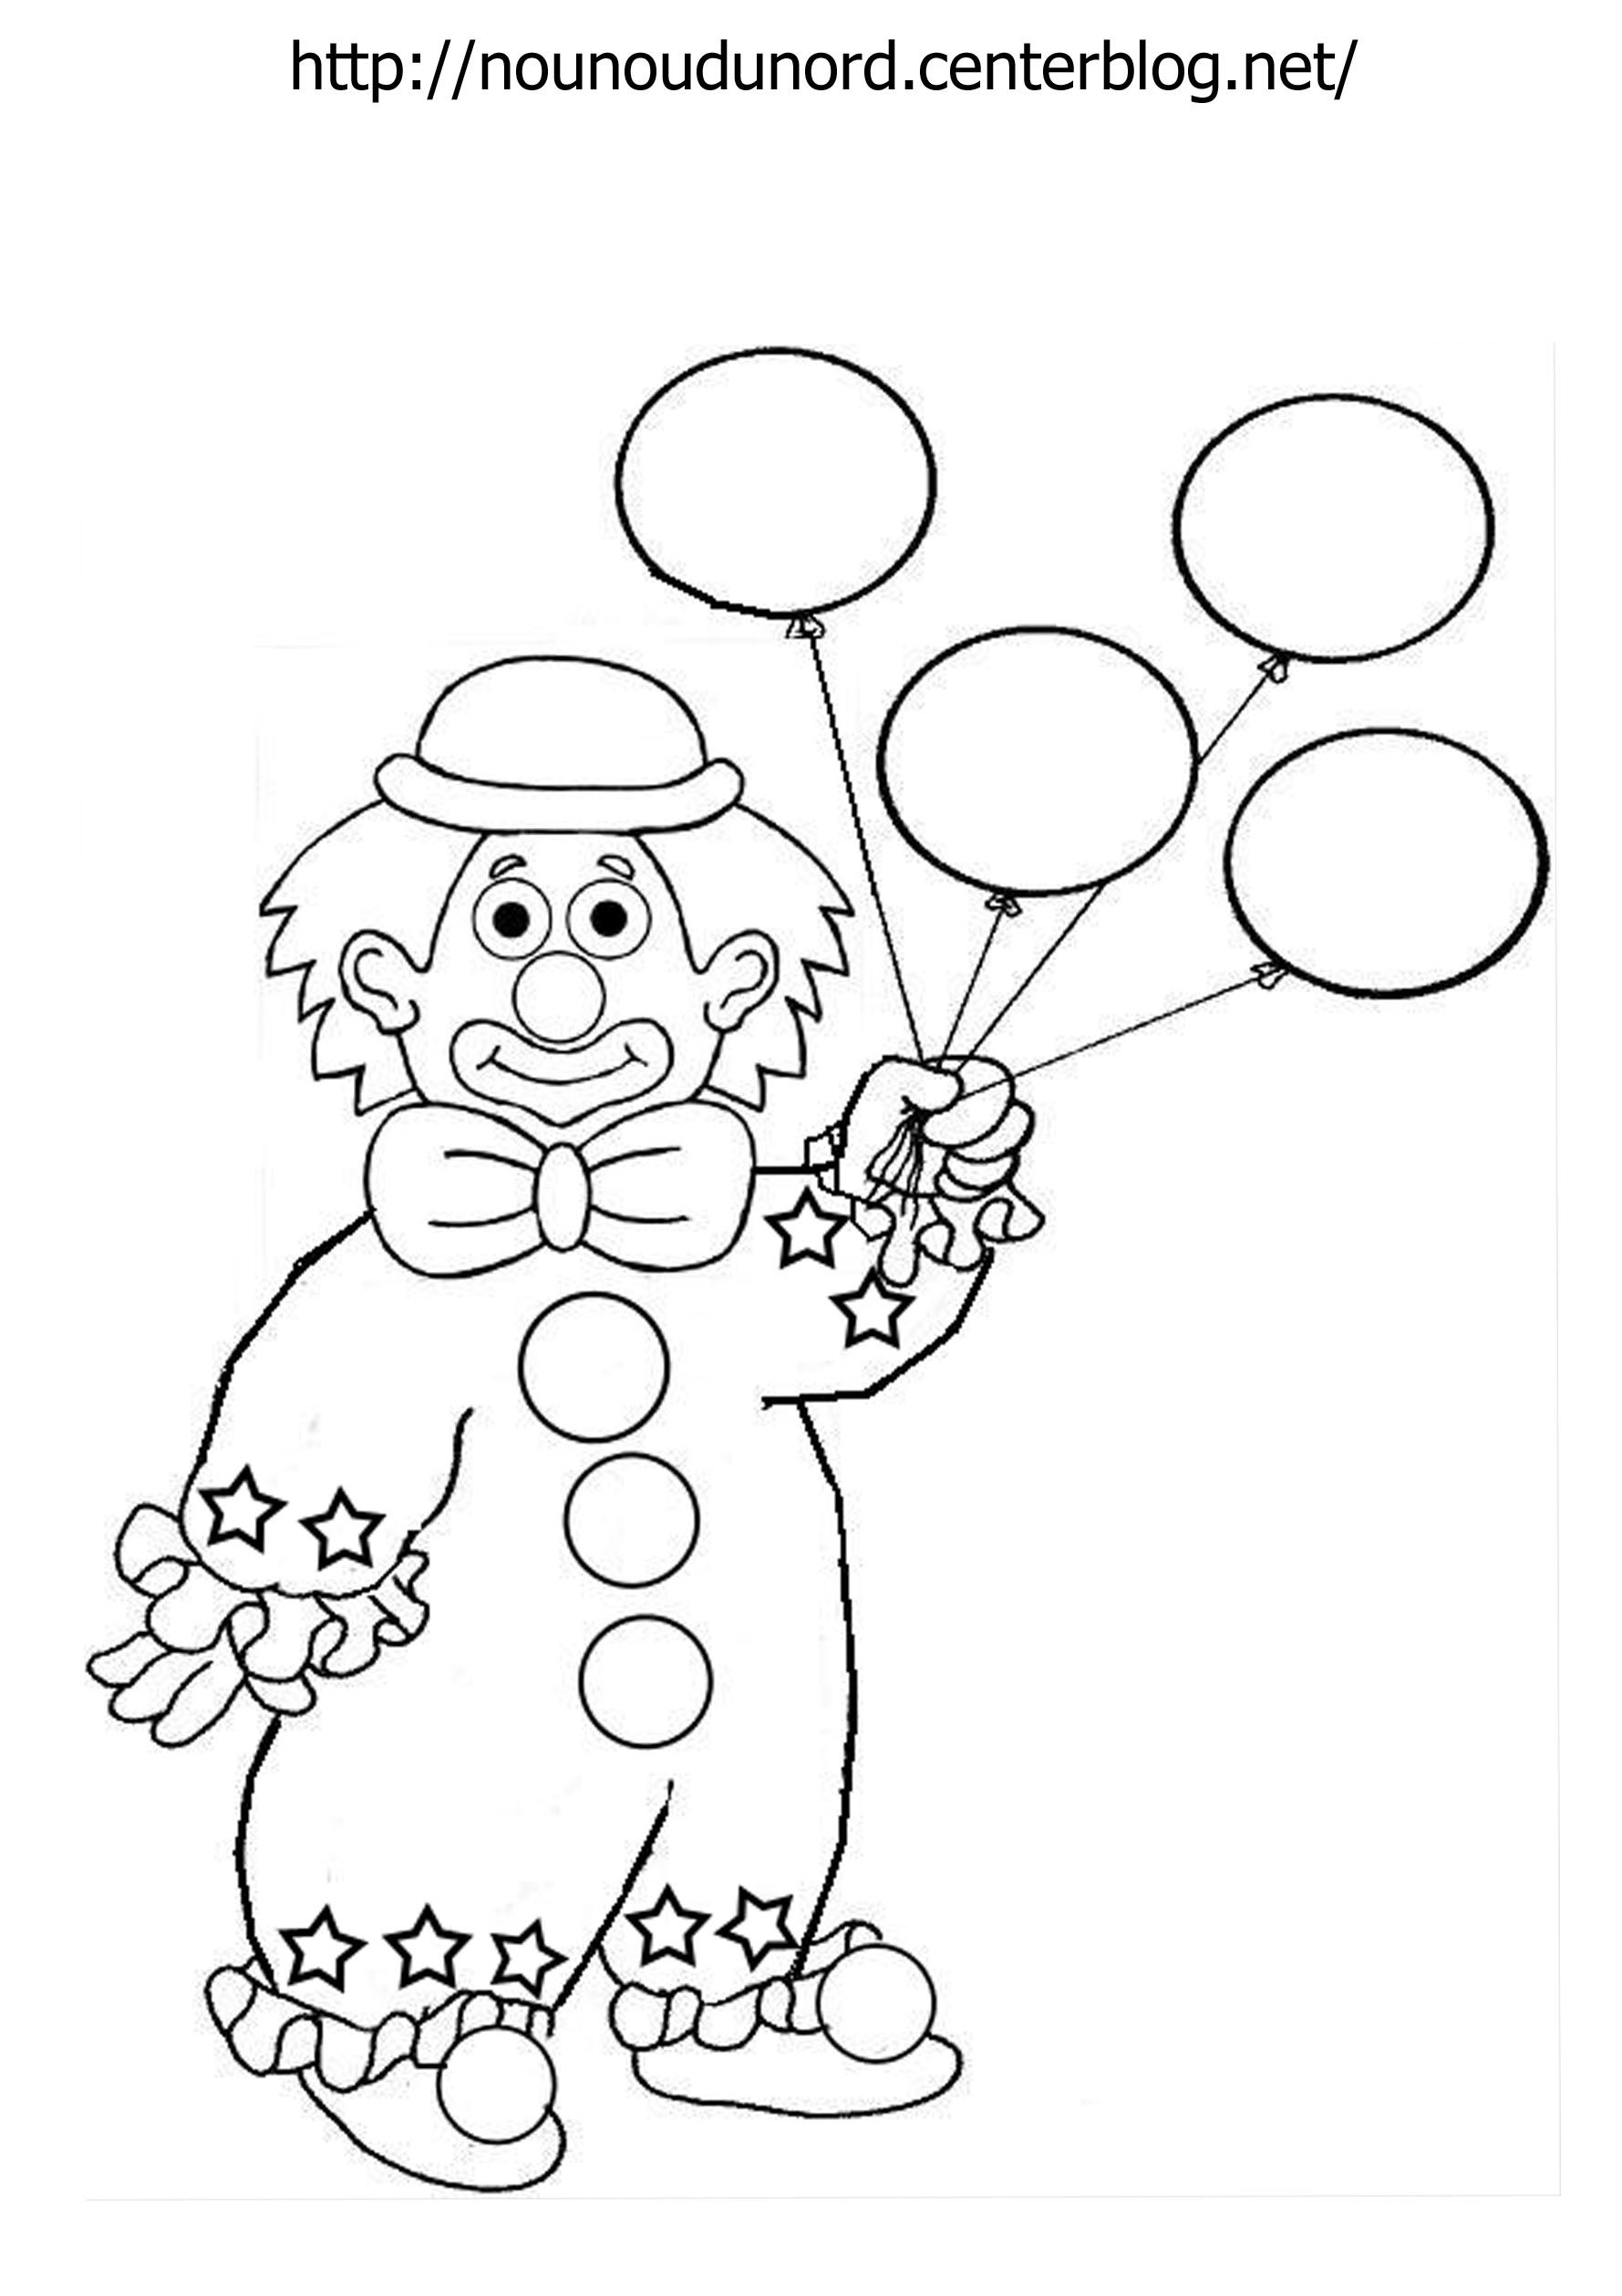 Клоун раскраска для детей 4 5 лет. Клоун раскраска. Клоун раскраска для детей. Клоун для раскрашивания детям. Клоун аппликация для детей раскраска.